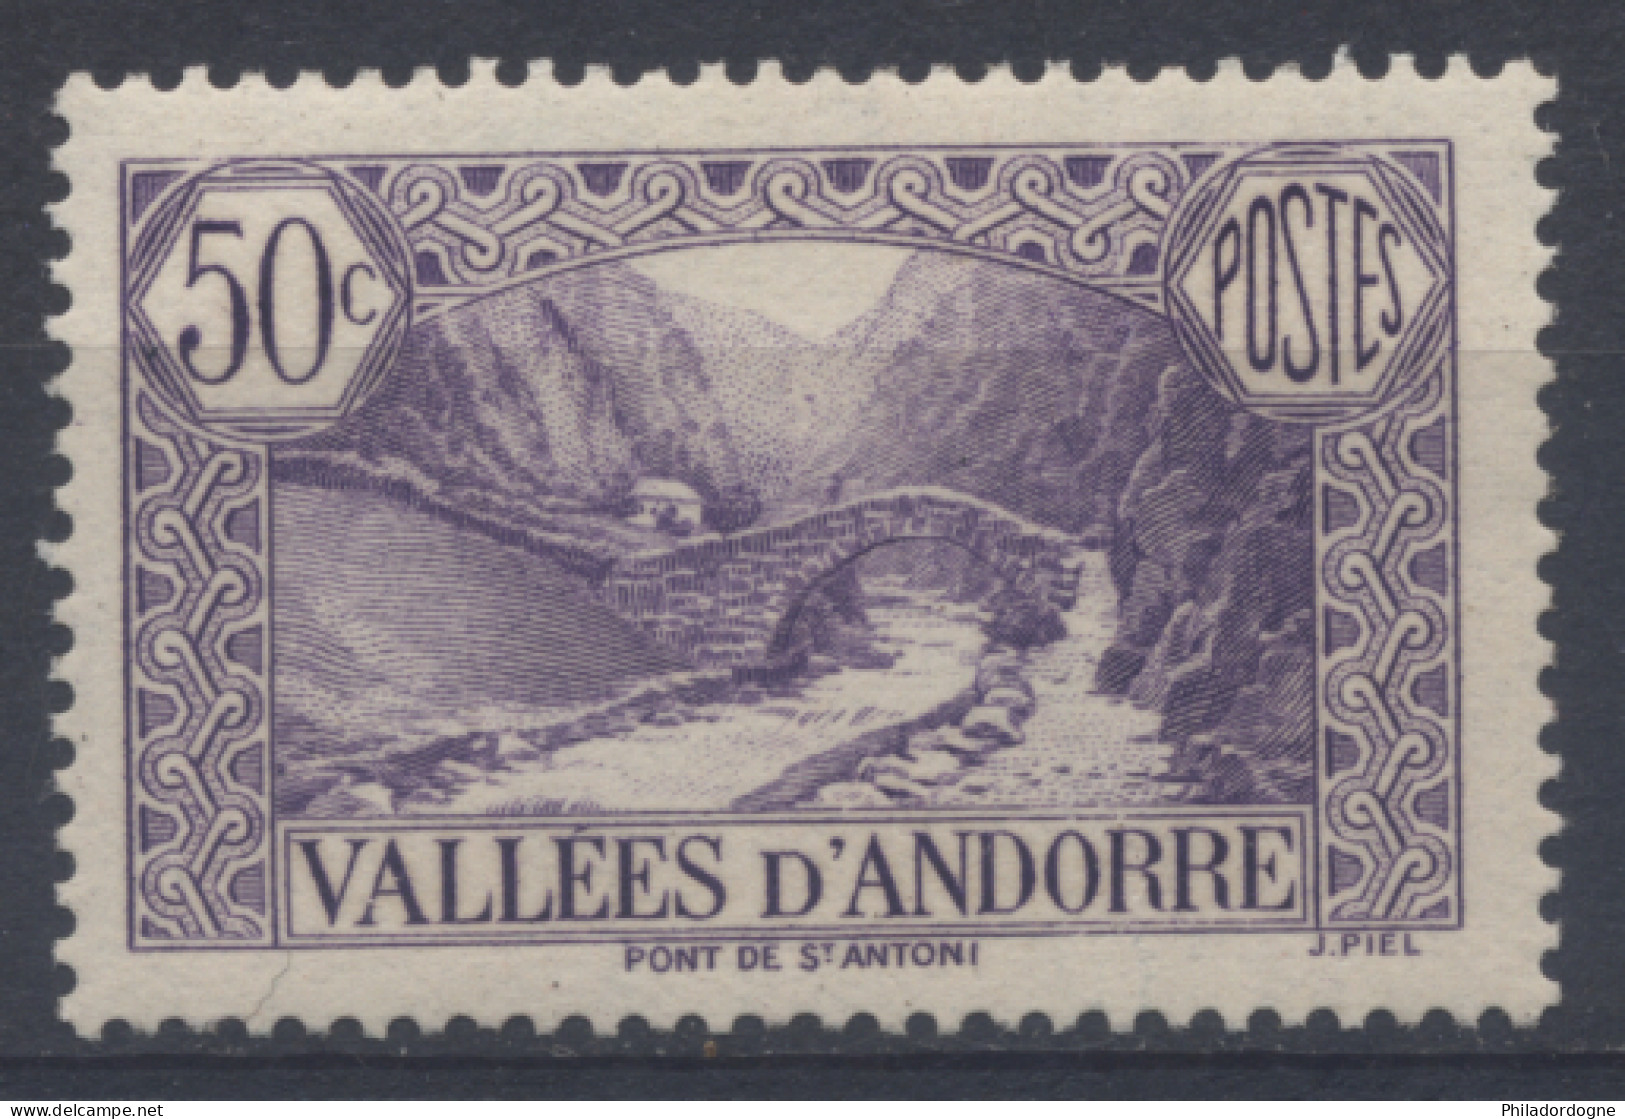 Andorre - Yvert N° 64 Neuf Et Luxe (MNH) - Cote 12,5 Euros - Ungebraucht